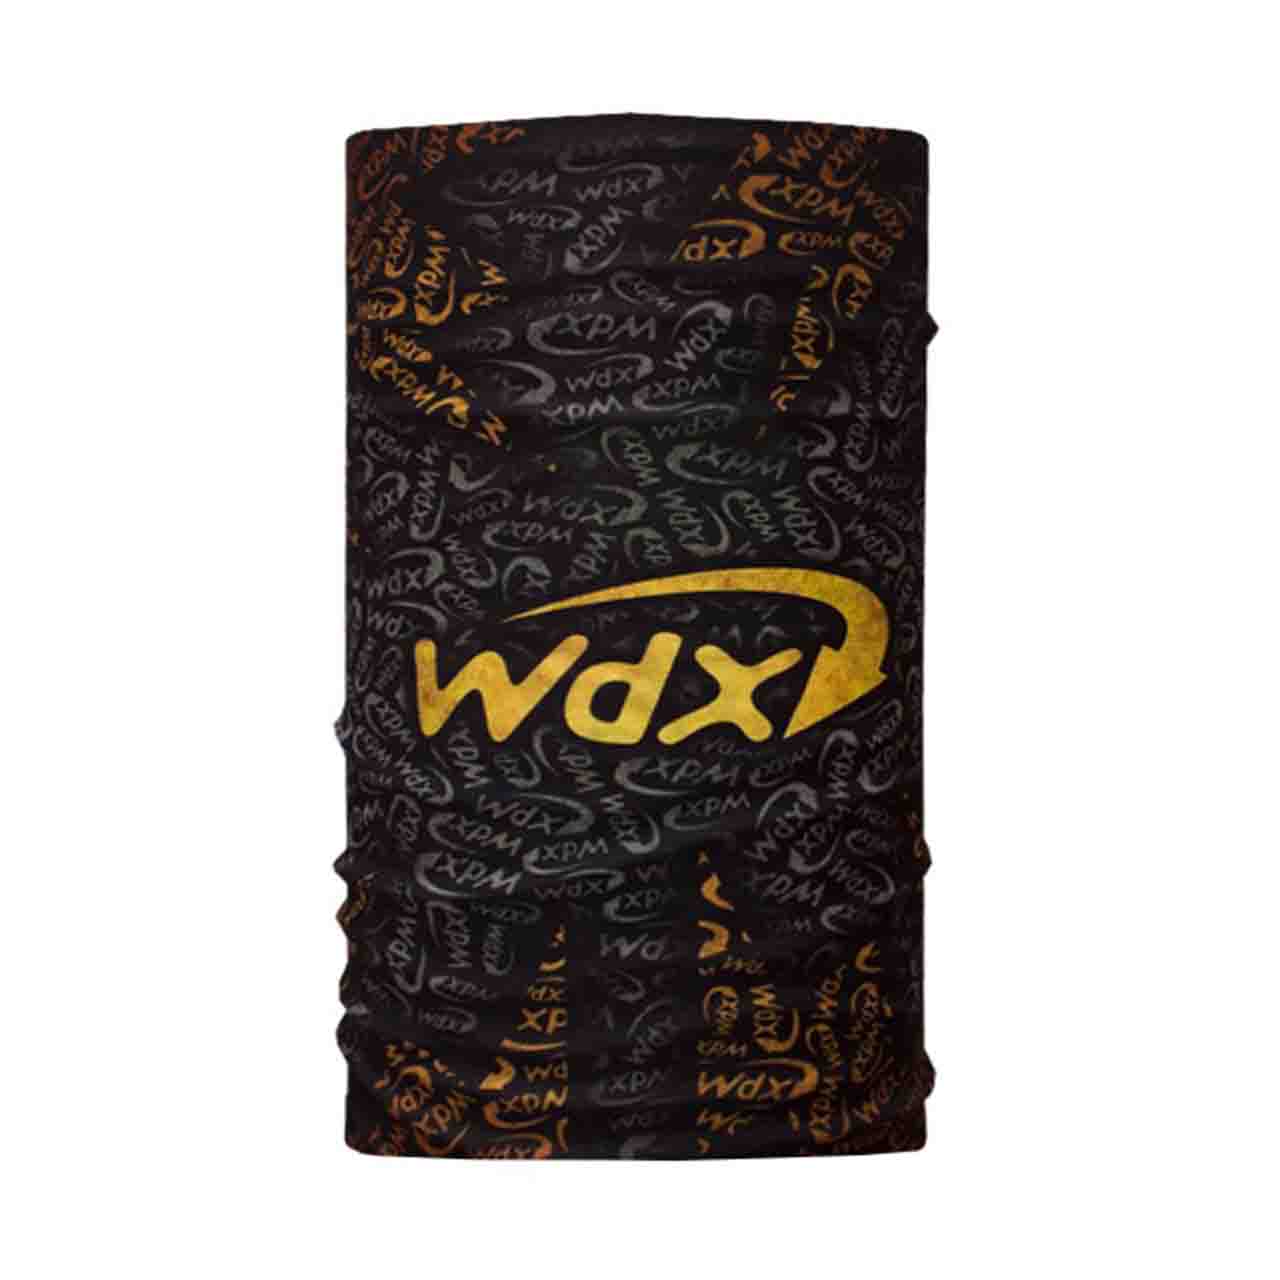 دستمال سر و گردن ویند اکستریم مدل Wdx D30